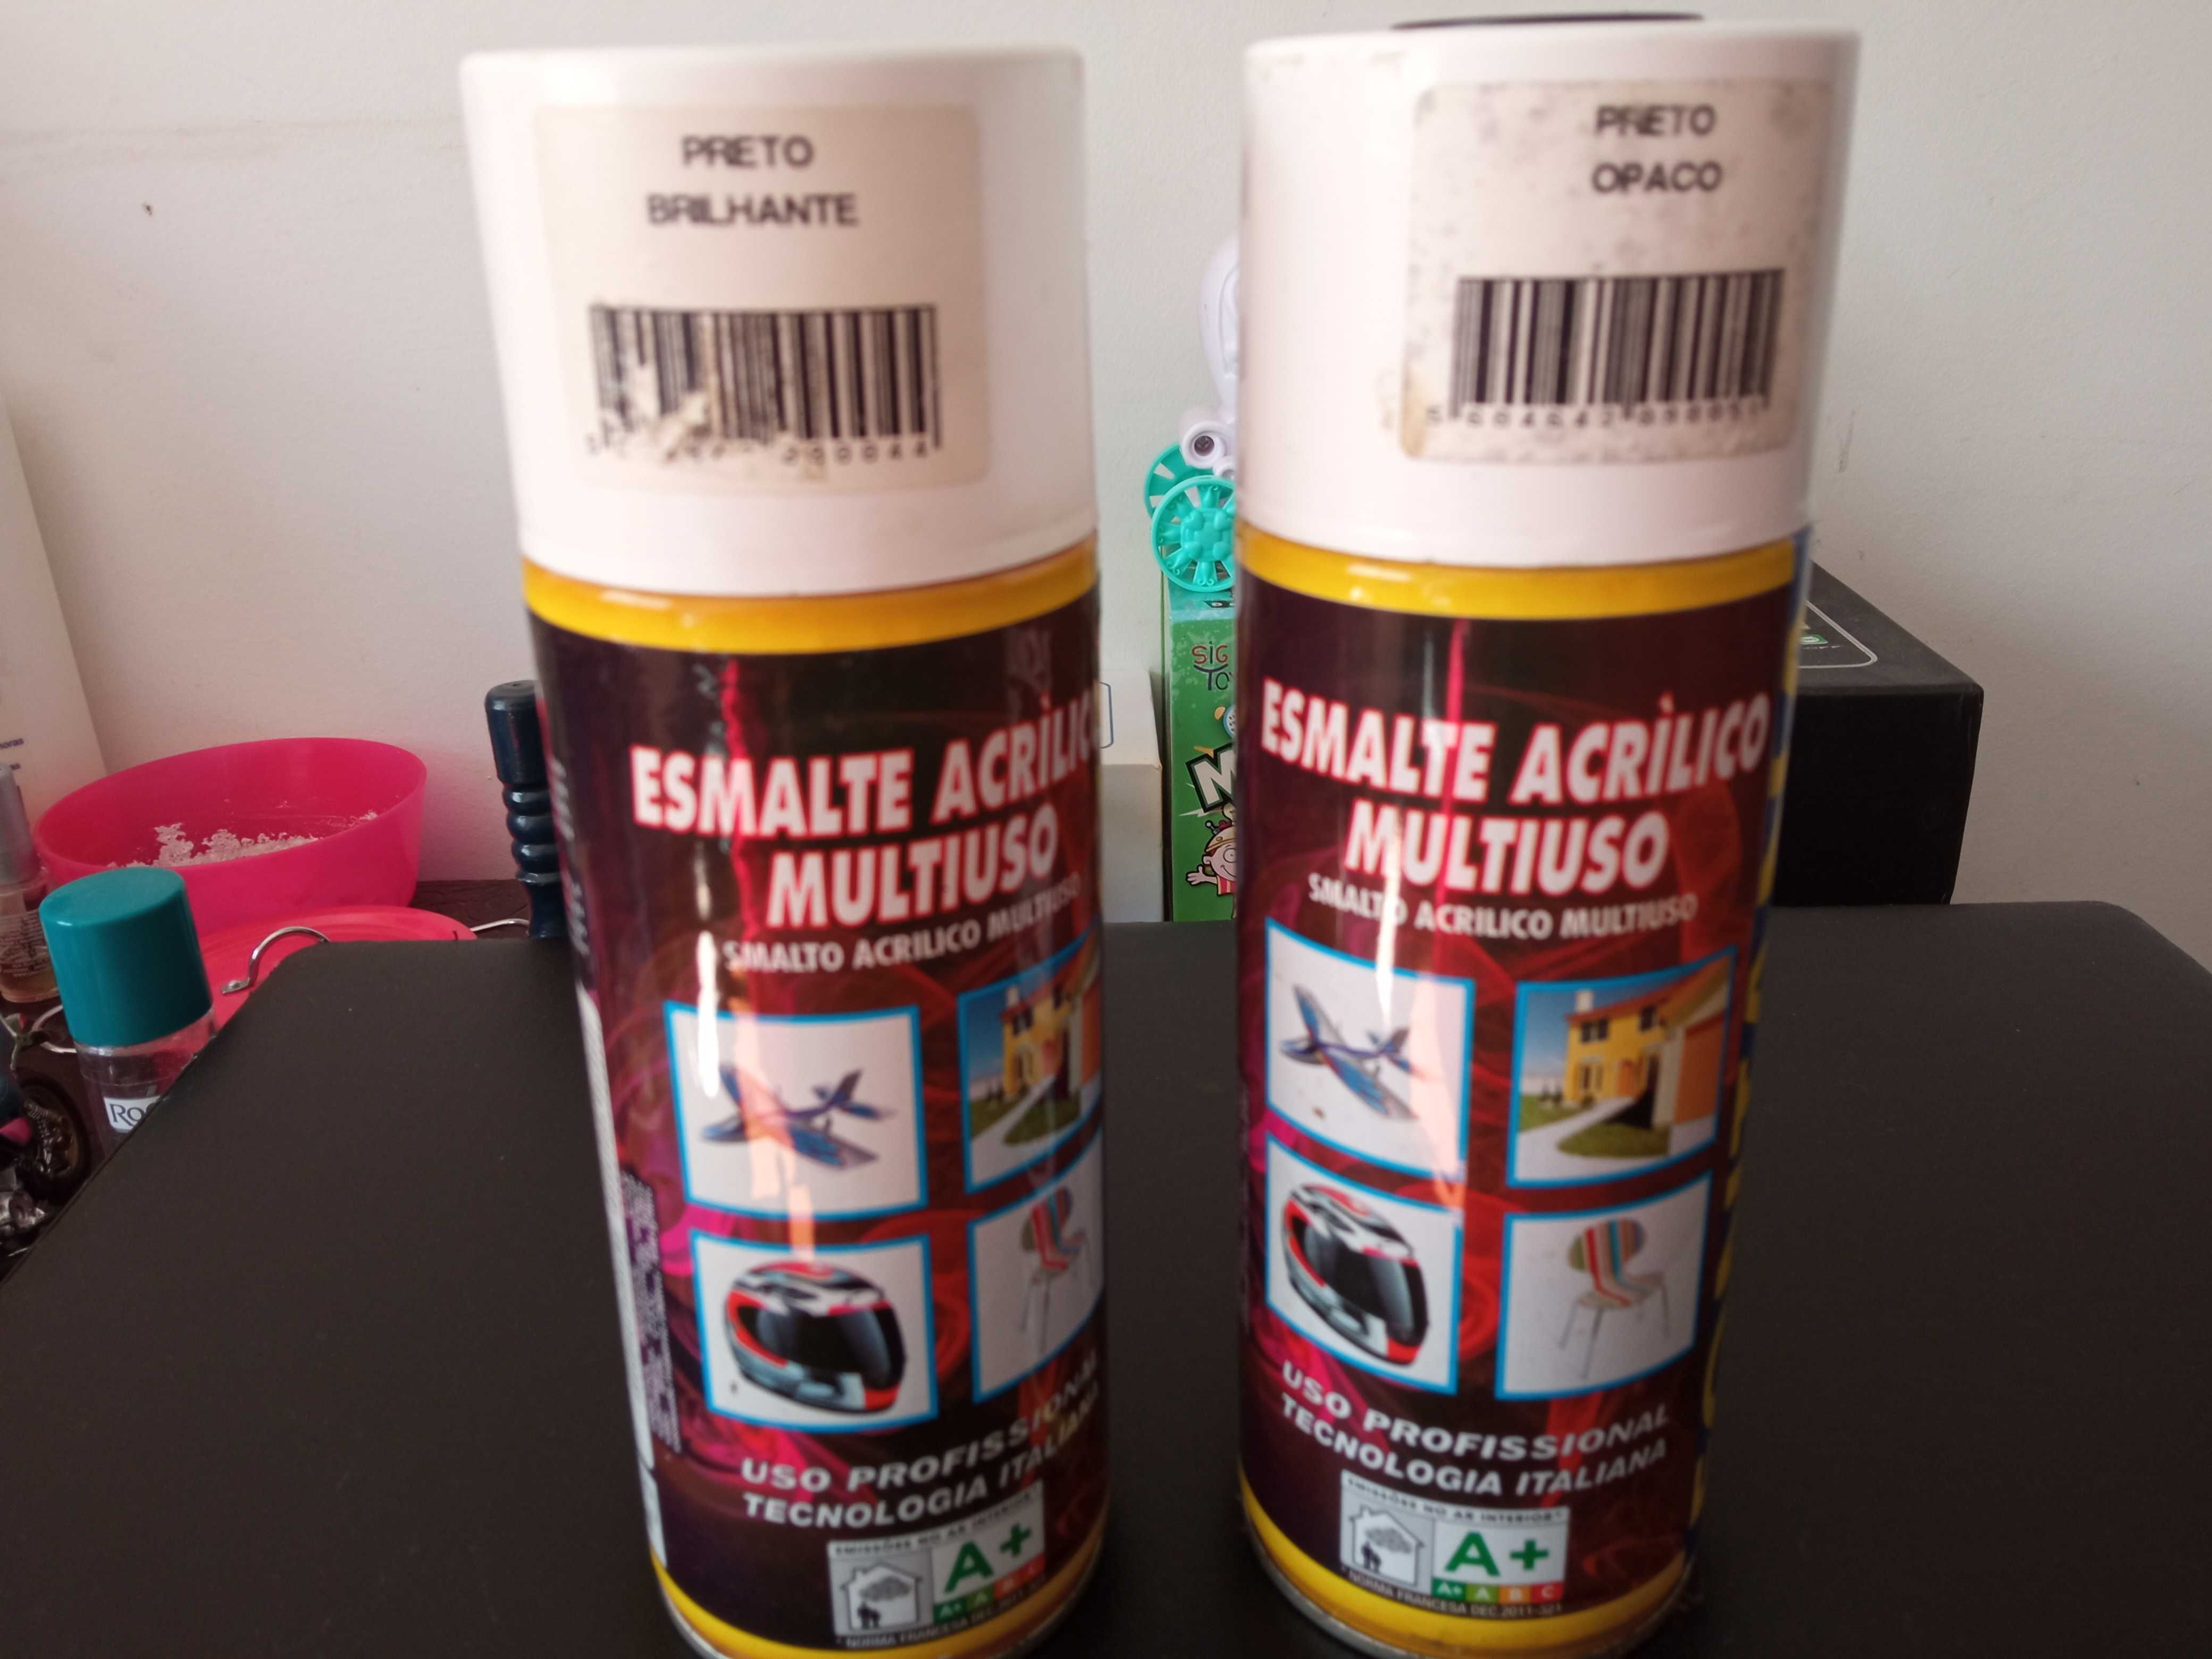 2 Latas de Spray de Esmalte Acrílico - Preto Brilhante e Opaco,Fontana